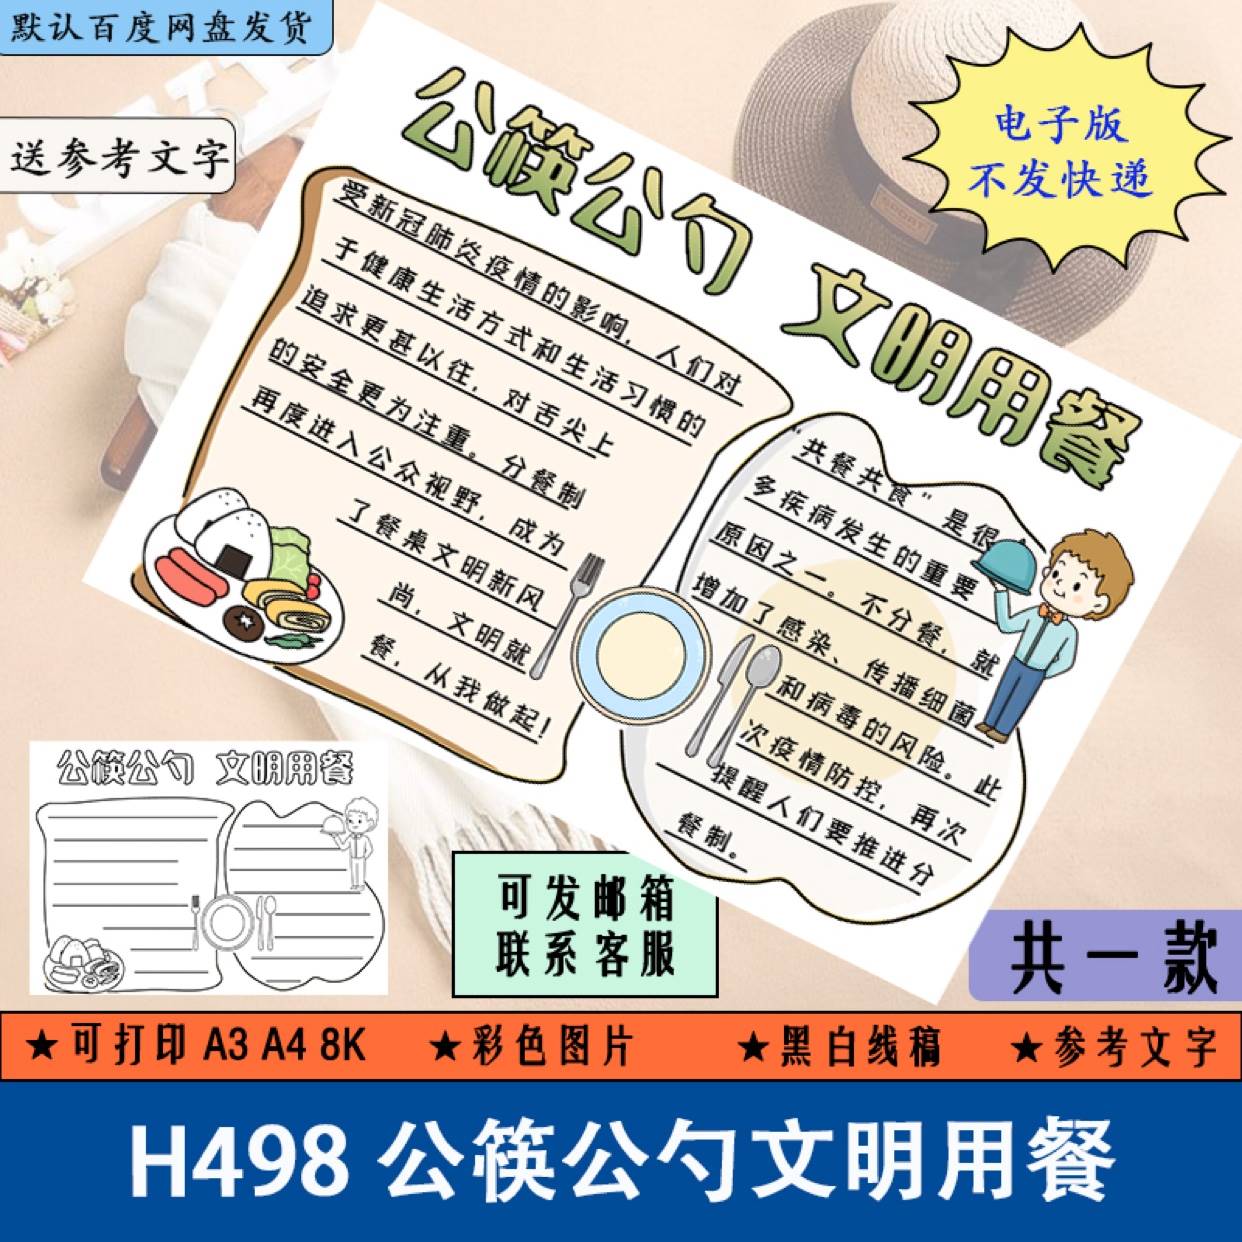 公筷公勺文明用餐卫生手抄报模板电子版小用餐文明手抄小报A3A48K